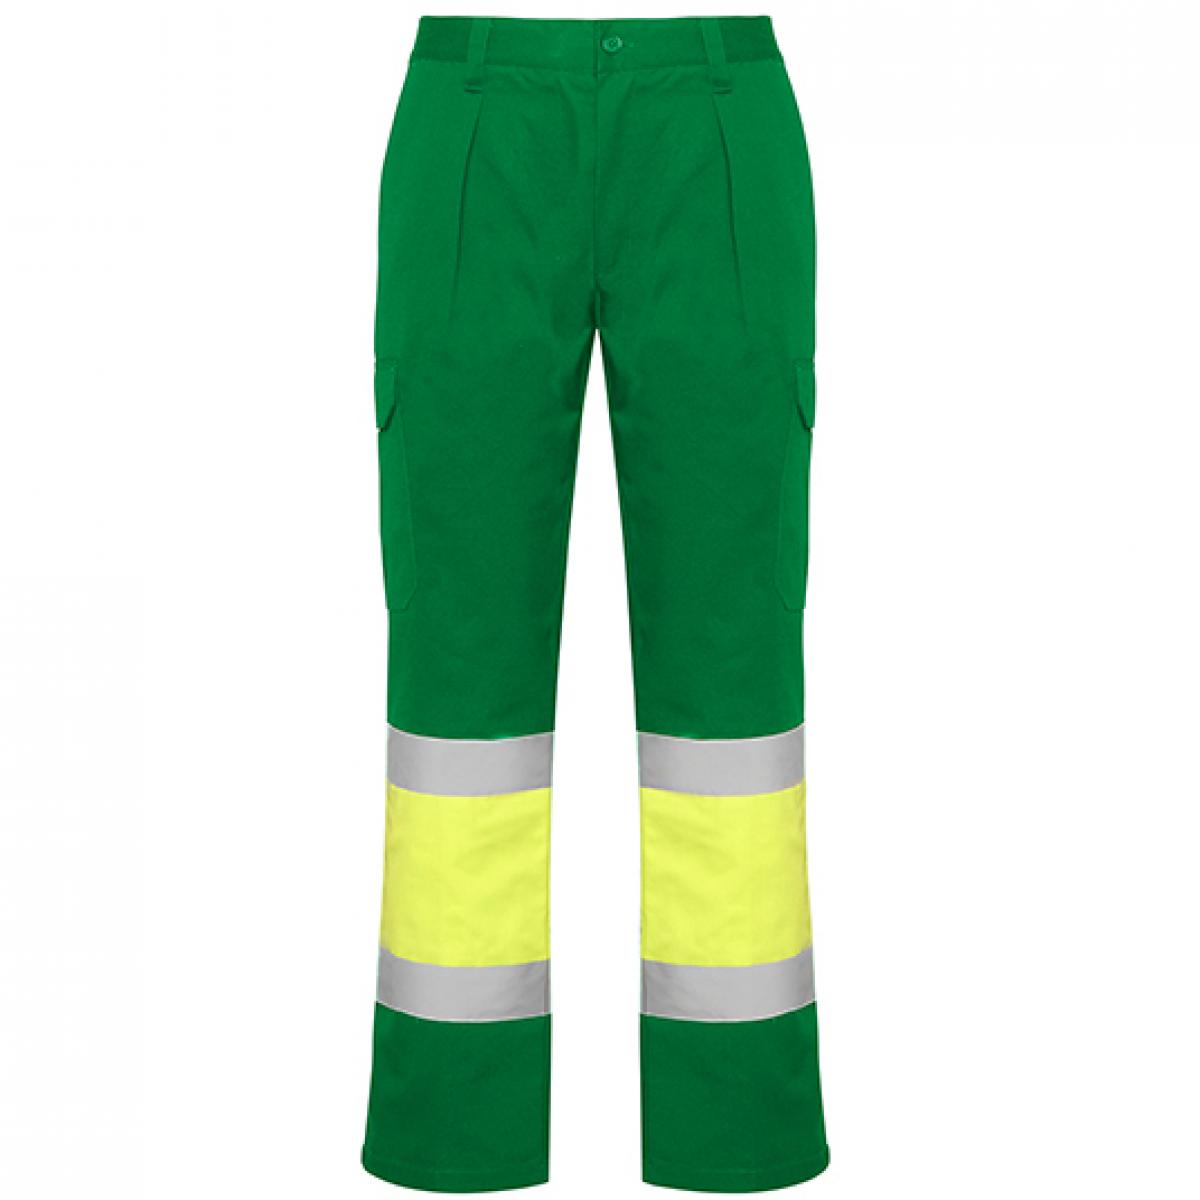 Hersteller: Roly Workwear Herstellernummer: HV9301 Artikelbezeichnung: Soan Hi-Viz Trousers - Arbeitshose mit Reflektionsstreifen Farbe: Garden Green 52/Fluor Yellow 221